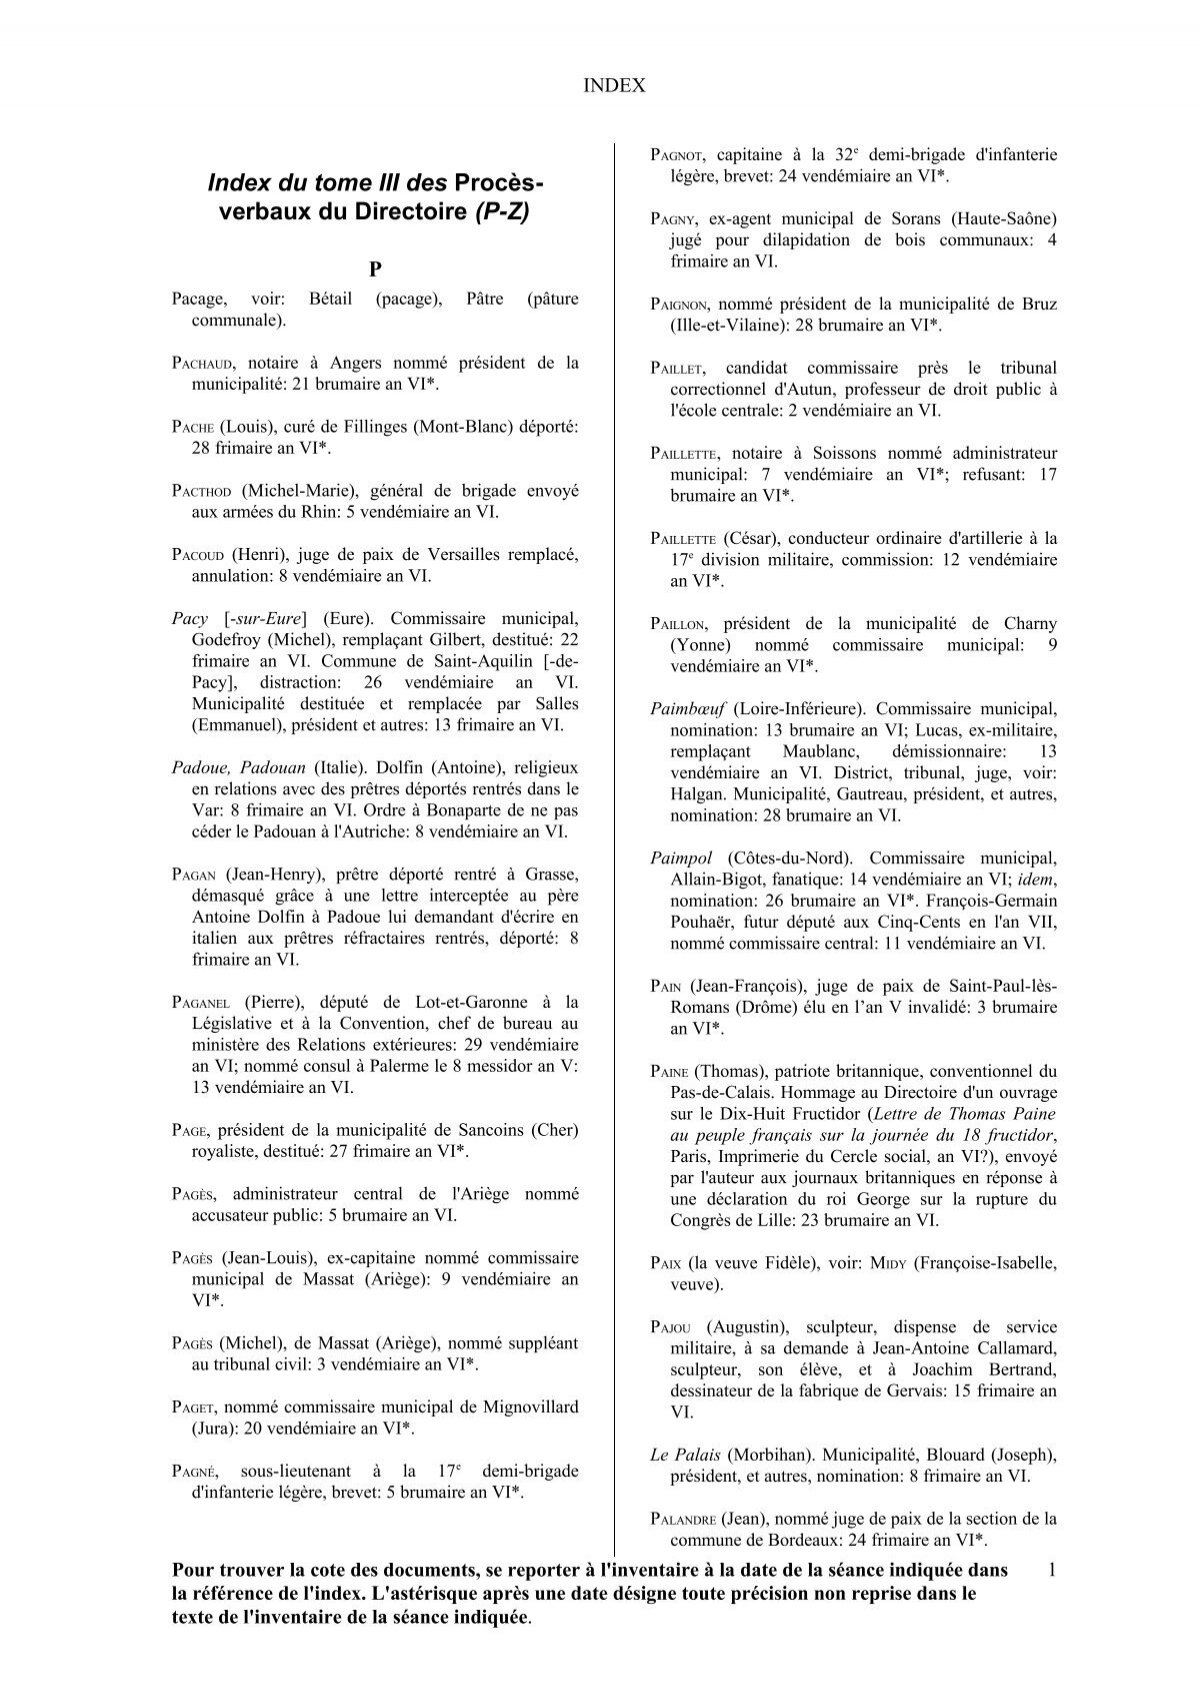 PV du Directoire, index, Q-Z - Archives nationales